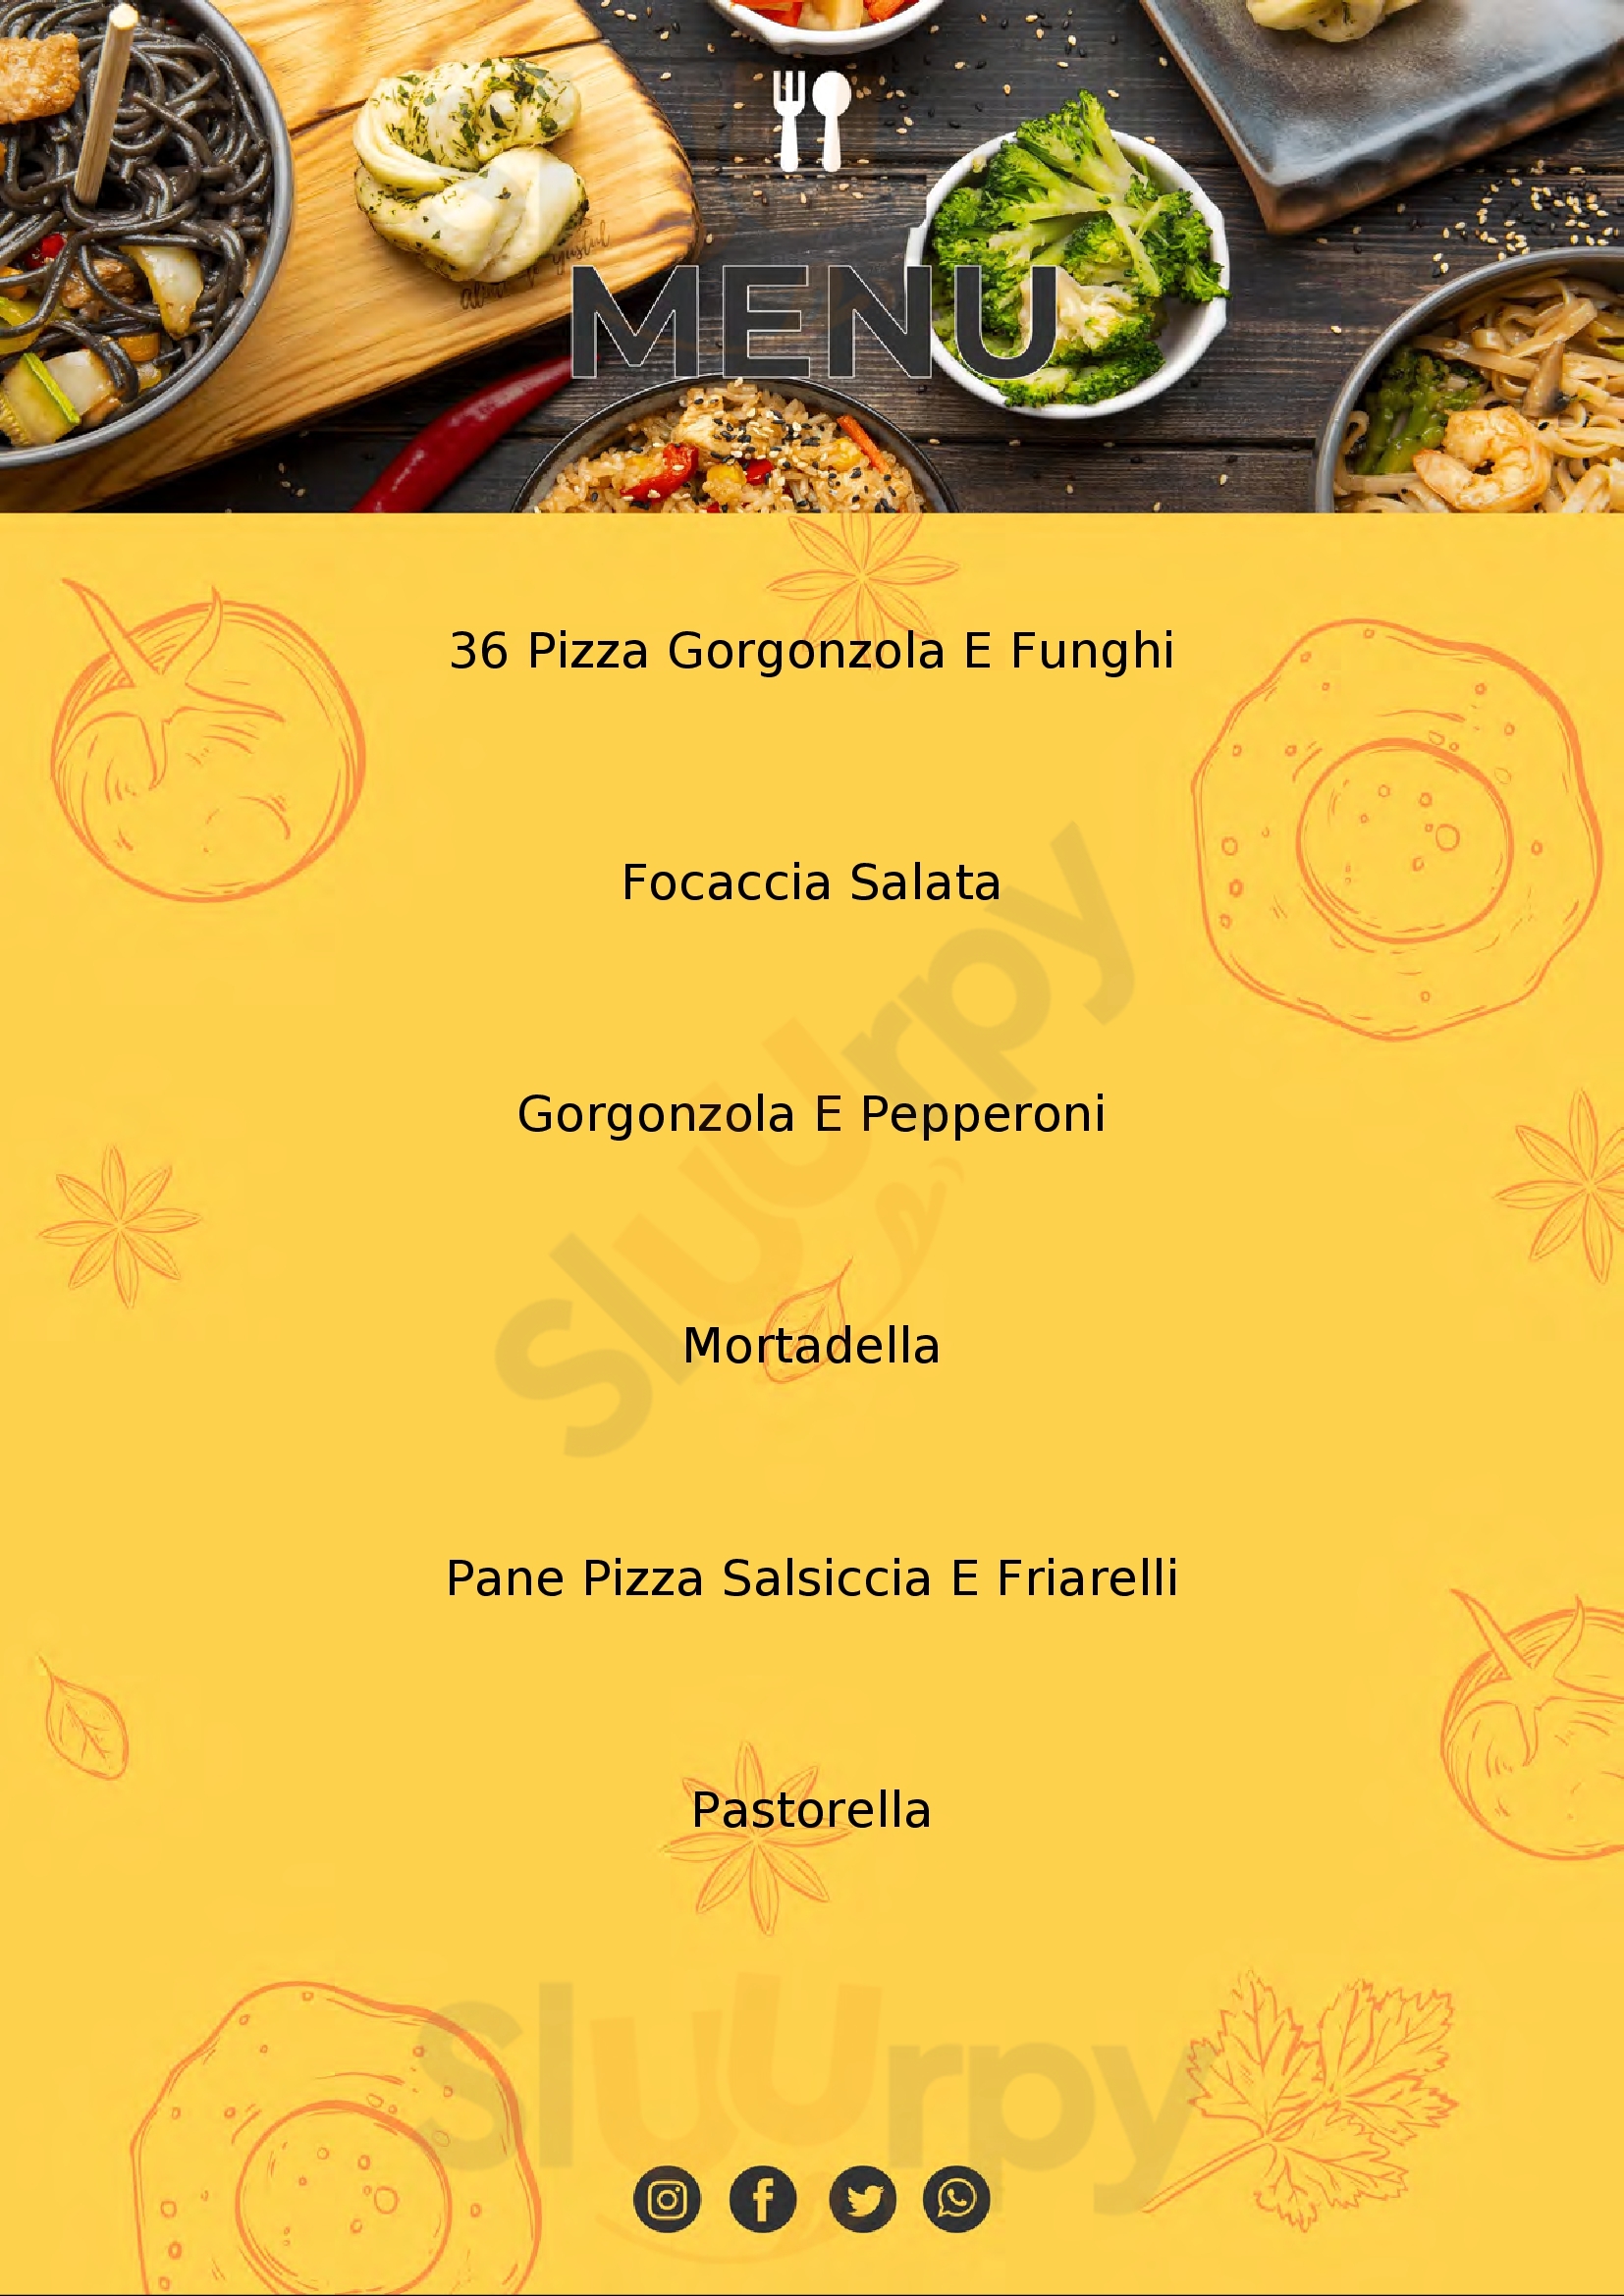 Pizzeria da Italo Cagliari menù 1 pagina